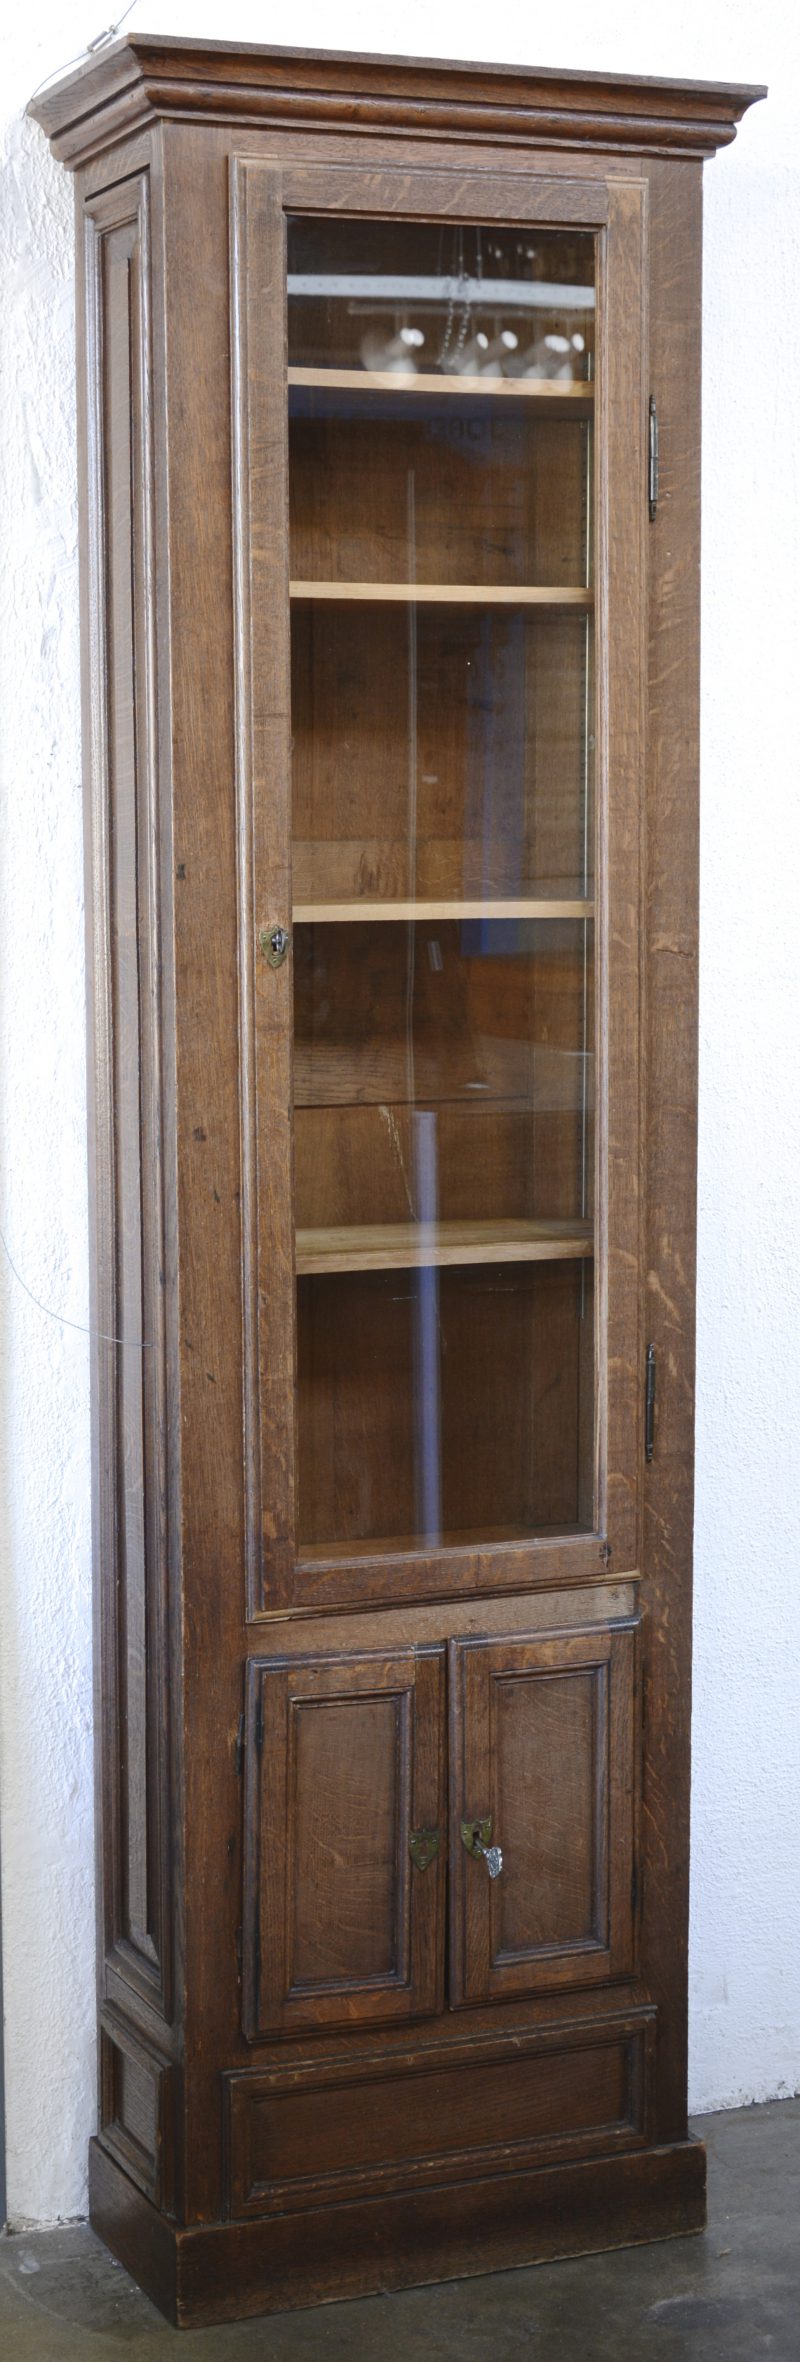 Een hoge eikenhouten vitrinekast met twee paneeldeurtjes onder de glazen deur.